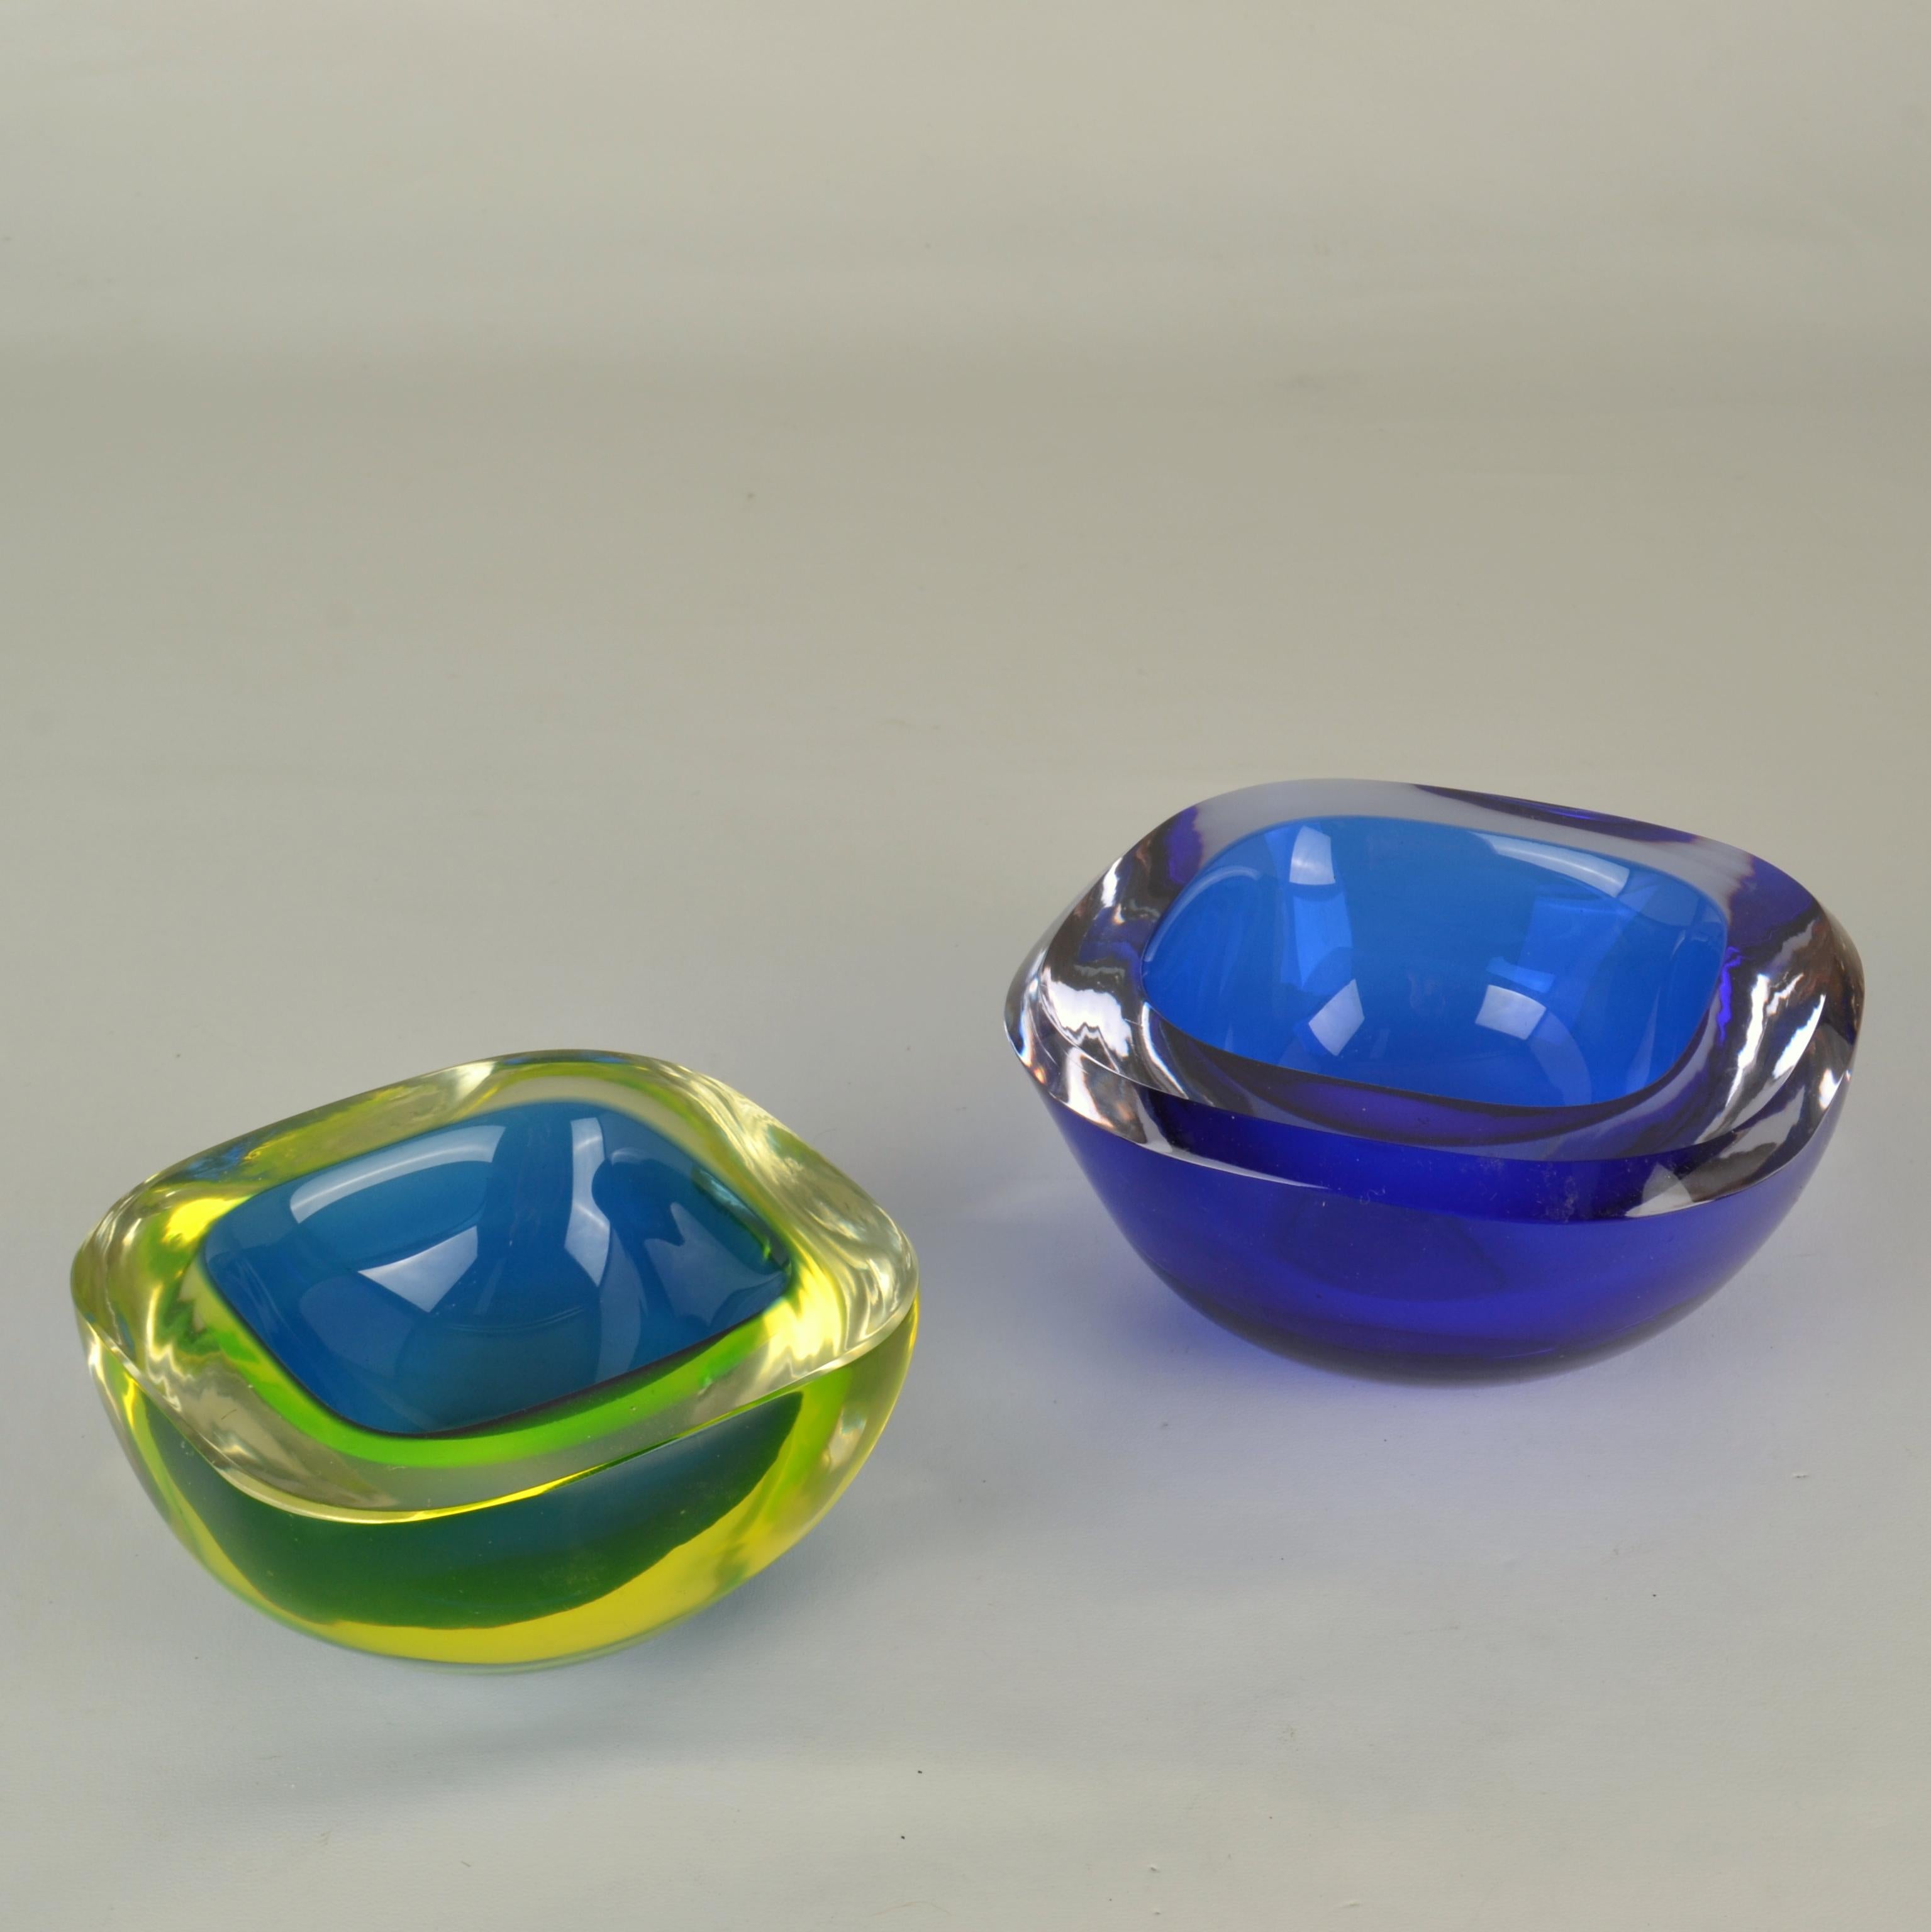 Quadratische Glasschalen von Flavio Poli für Seguso aus den 1960er Jahren in tiefem Blau. Die Schalen sind mundgeblasen, bekannt als venezianischer Sommerso, hergestellt in Murano, Venedig, Italien. 
Die Schalen sind eine Kombination aus tiefem Blau